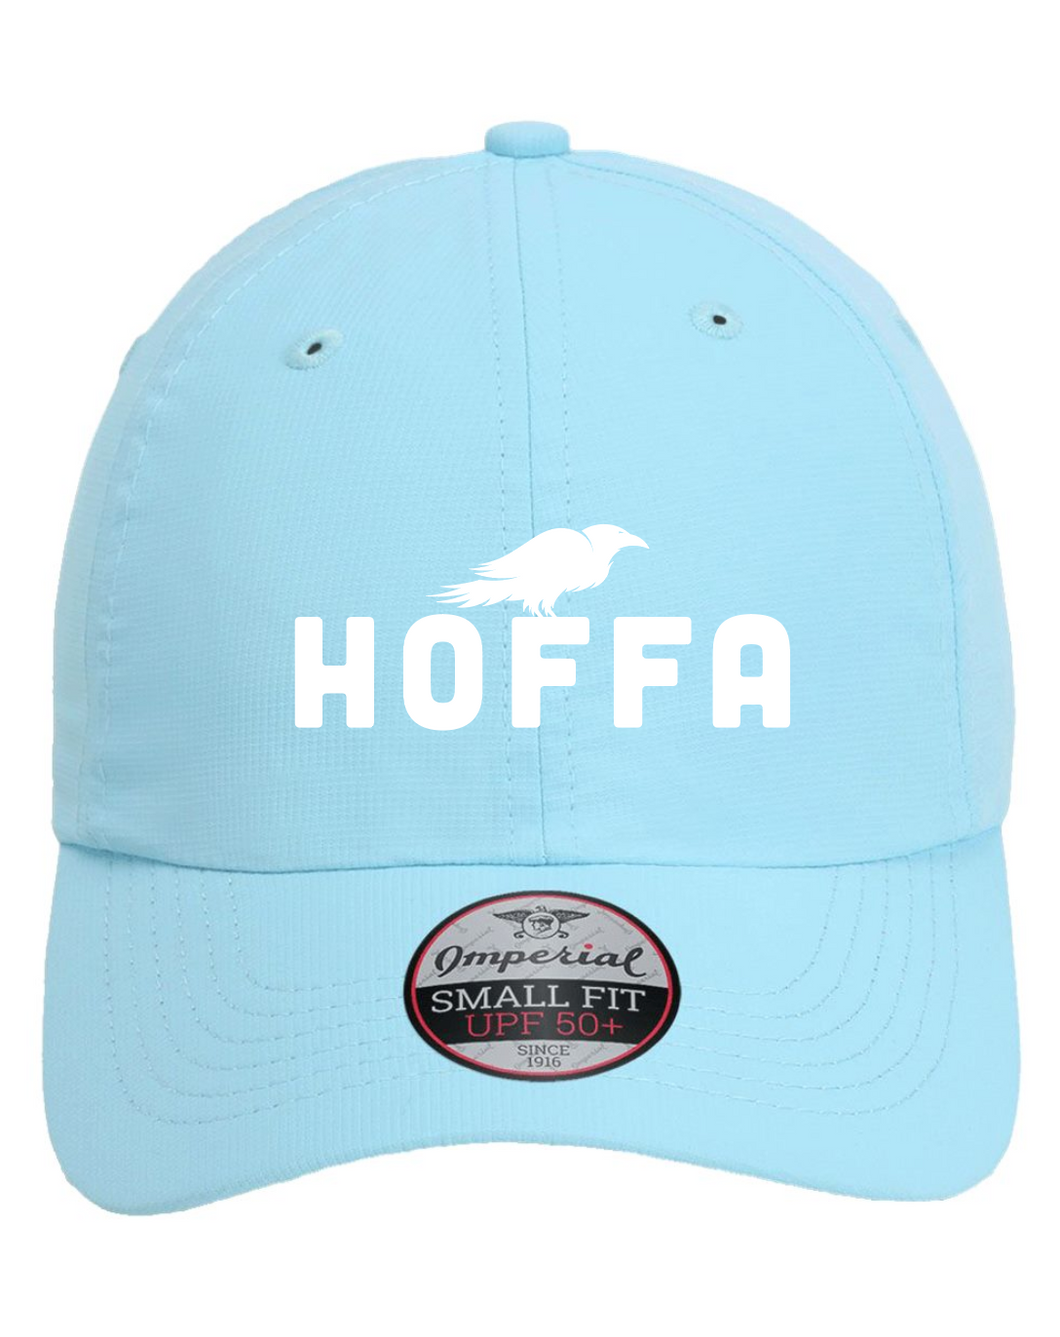 HOFFA Classic Ladies Cap